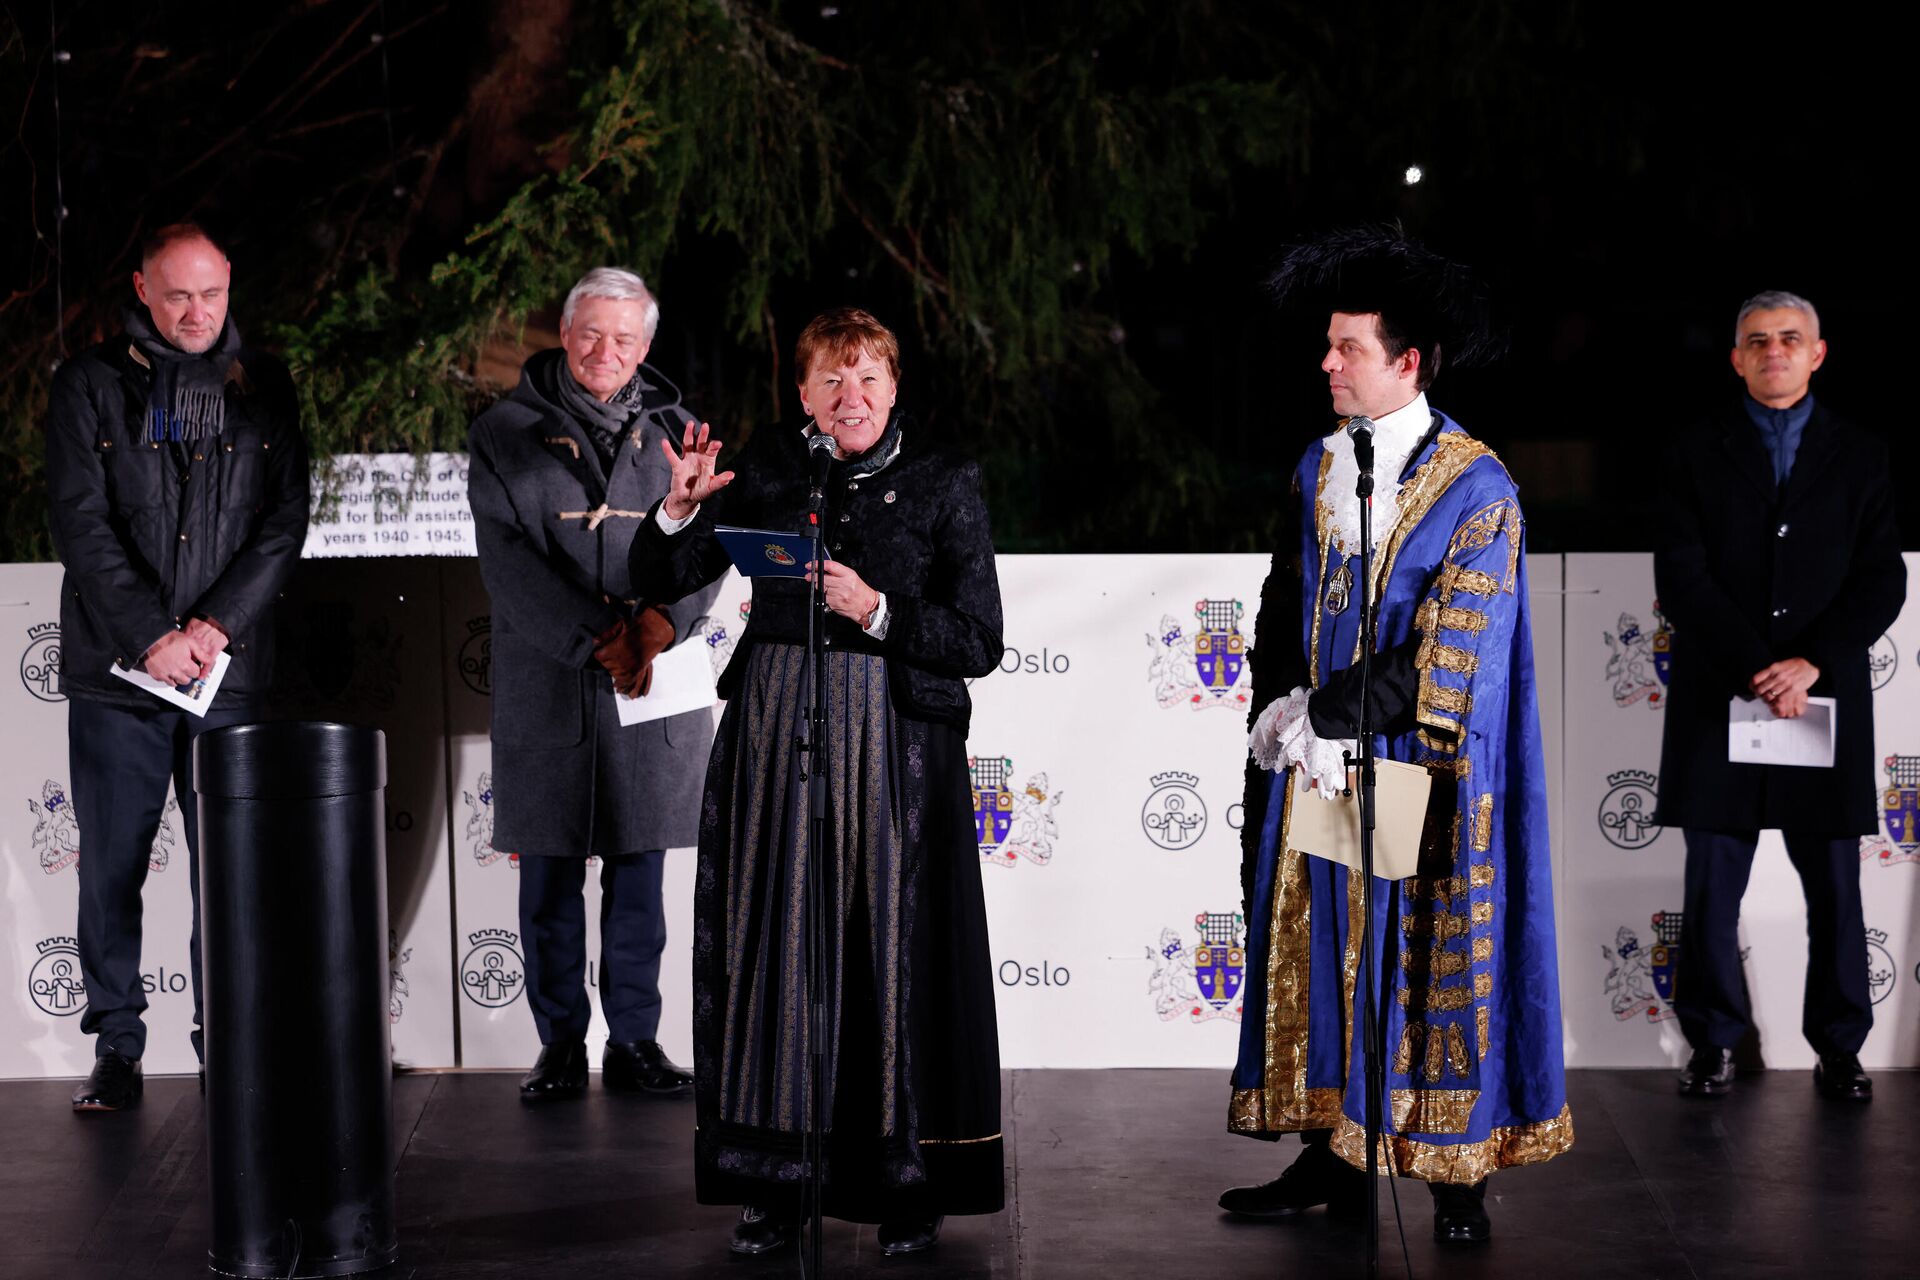 Мэр Осло Марианна Борген произносит речь на традиционной церемонии зажигания рождественской елки на Трафальгарской площади в центре Лондона 2 декабря 2021 года - Sputnik Беларусь, 1920, 02.12.2021